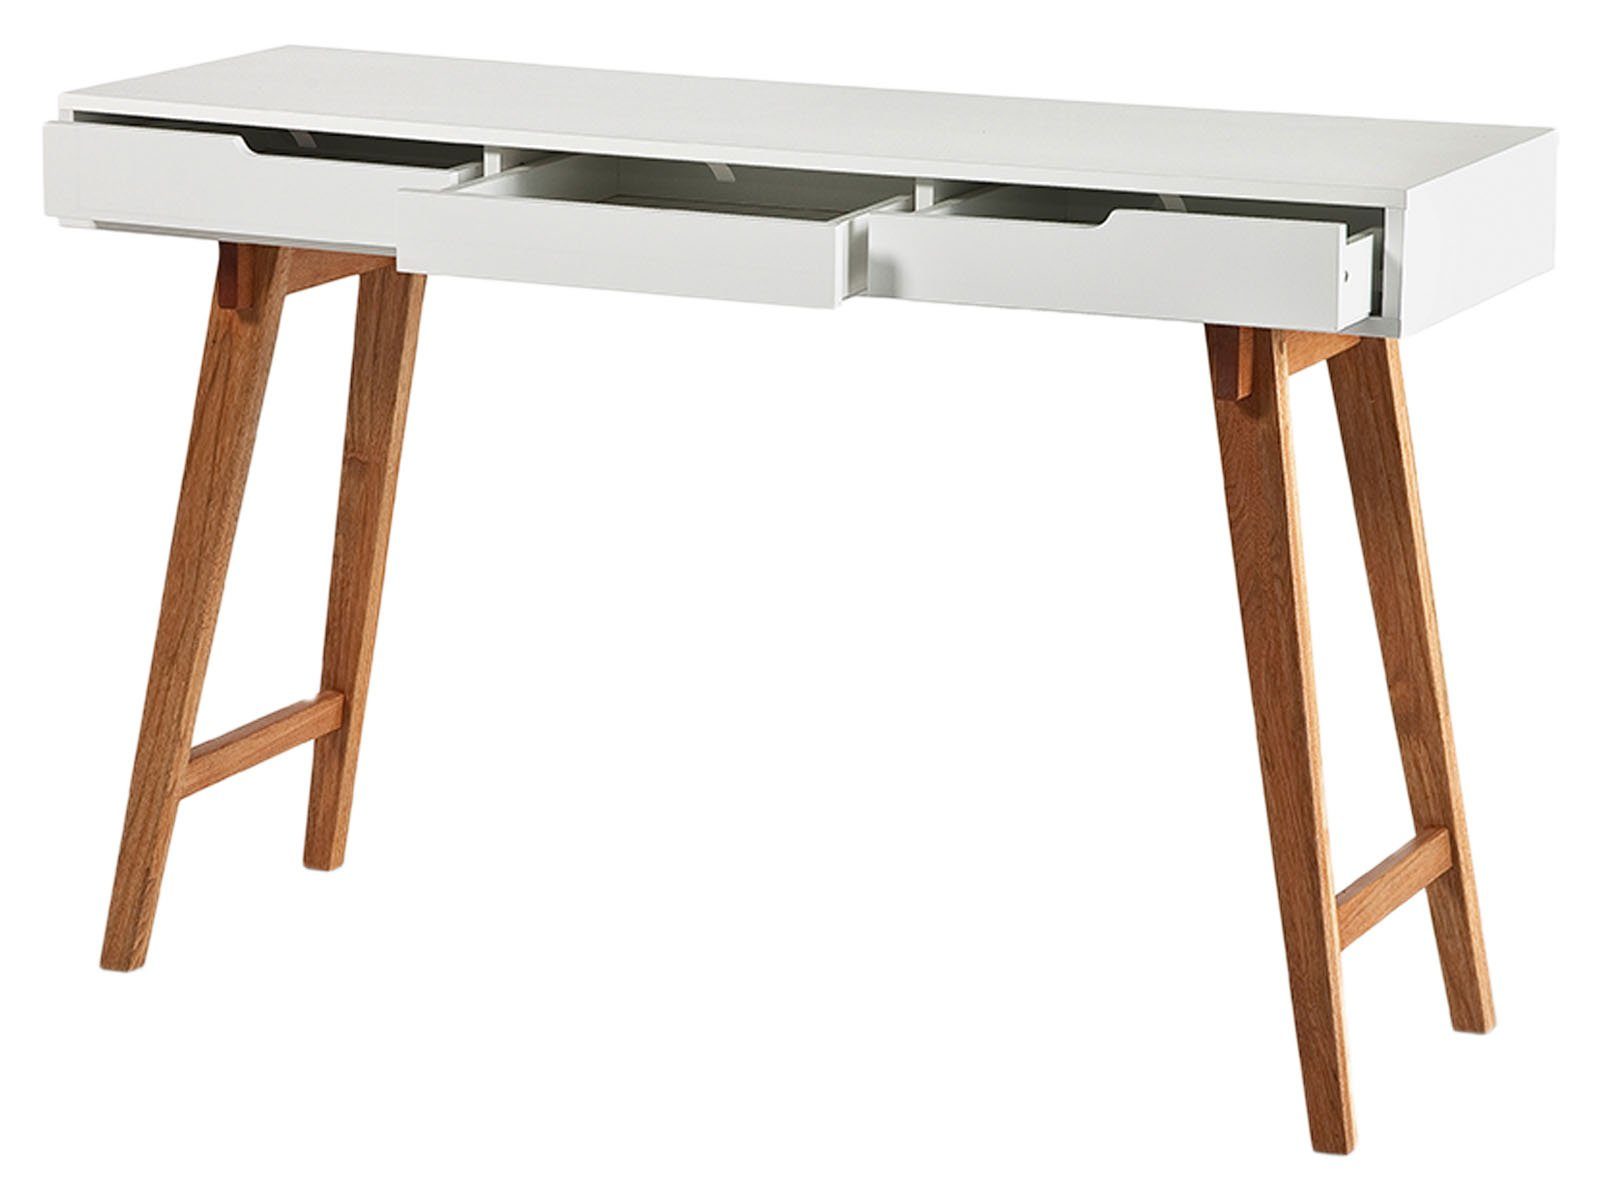 möbelando Schreibtisch Anneke S, Moderner Schreibtisch aus MDF-Platte in  matt weiß lackiert, Beine aus Massivholz in buchefarben mit 3 Schubfächern.  Breite 120 cm, Höhe 78 cm, Tiefe 40 cm.